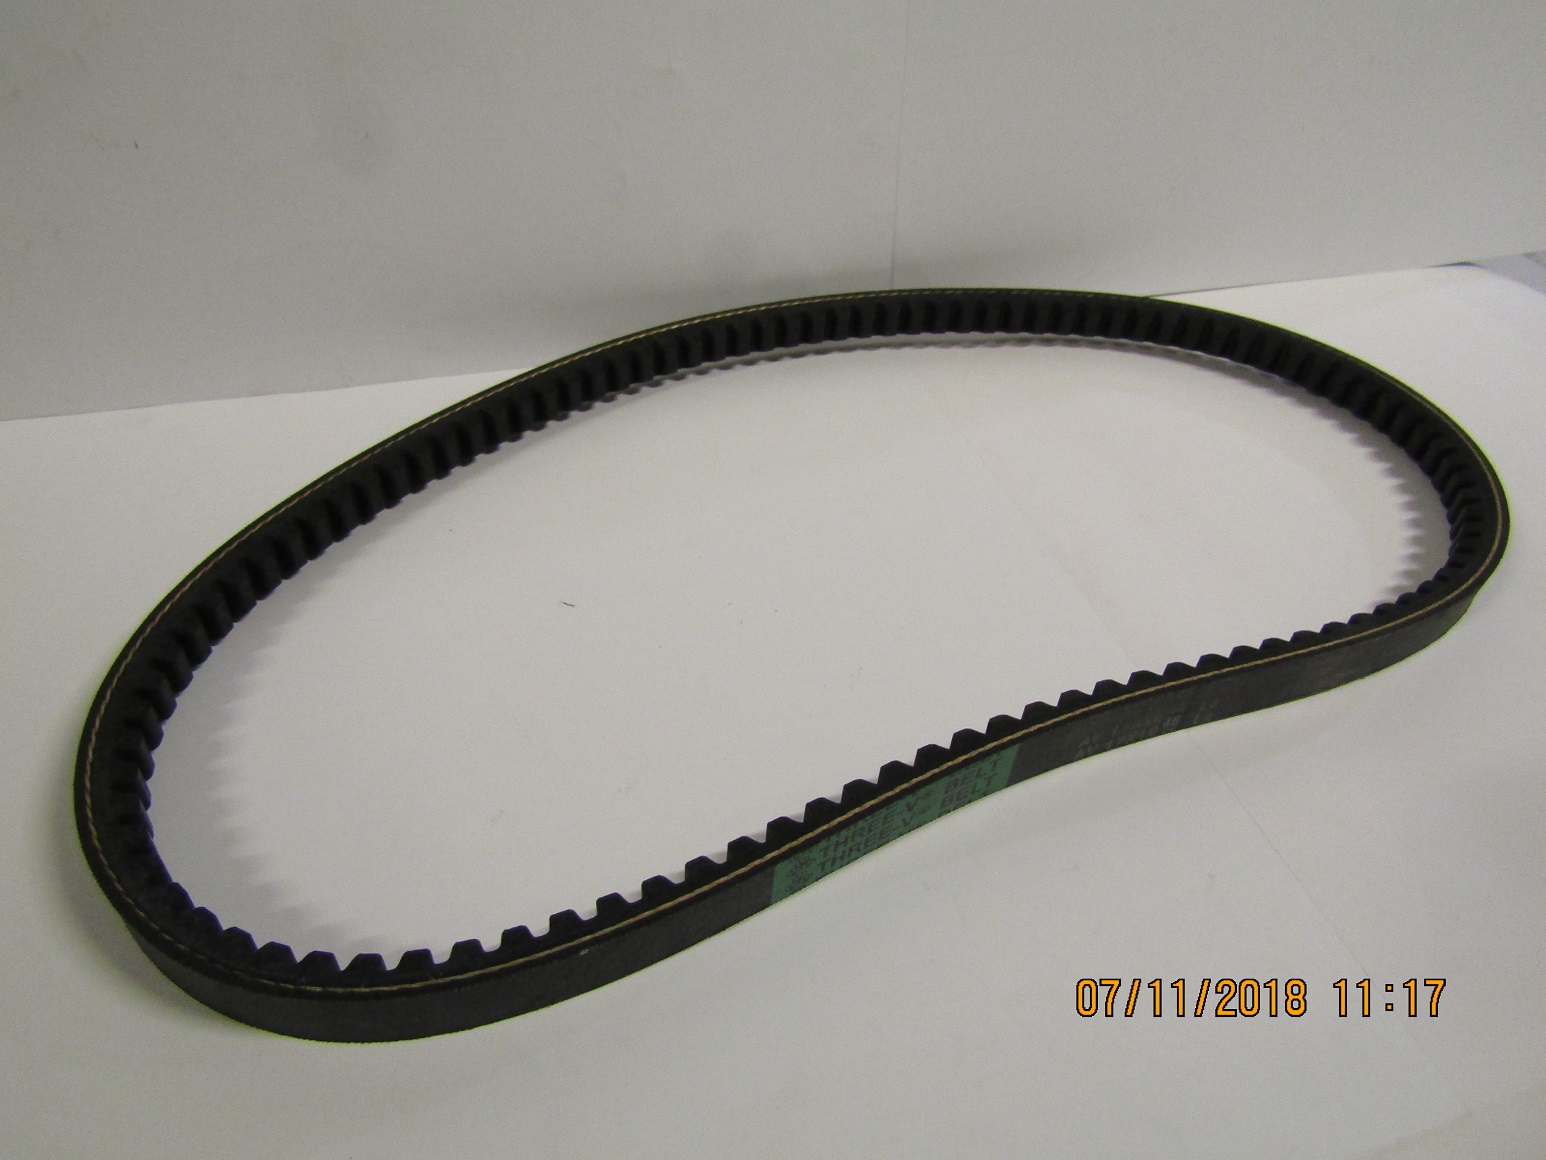 Ремень приводной зубчатый (AV17х1046La) для TSS-СР-420/V-Belt